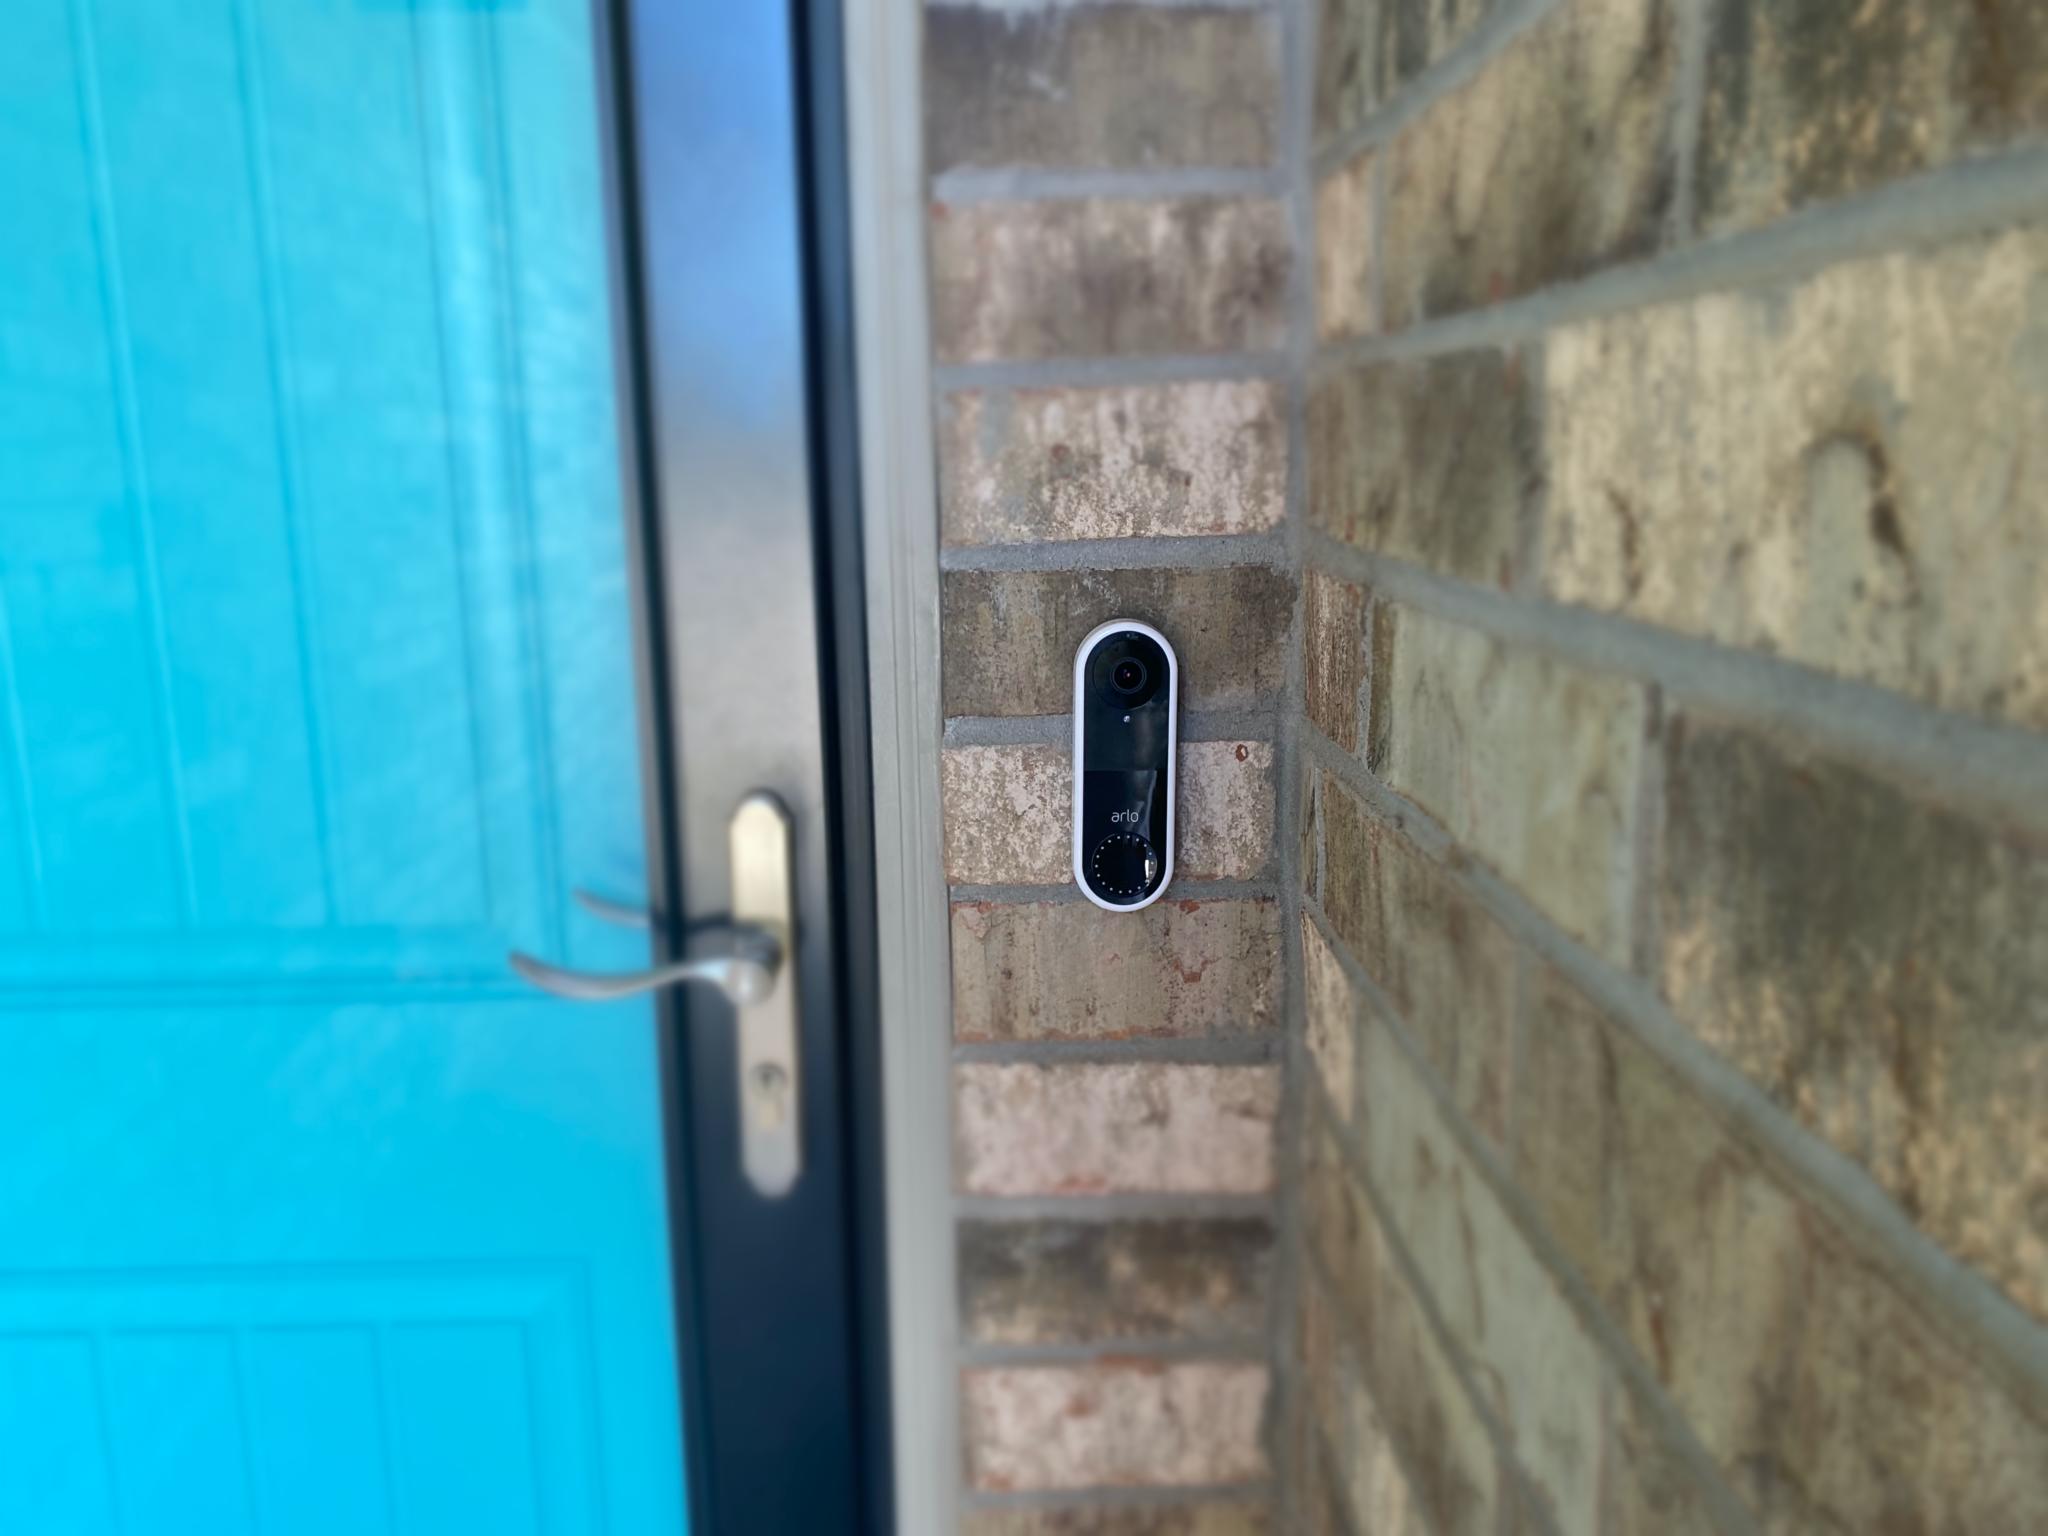 Arlo Video Doorbell installed in an outdoor setting